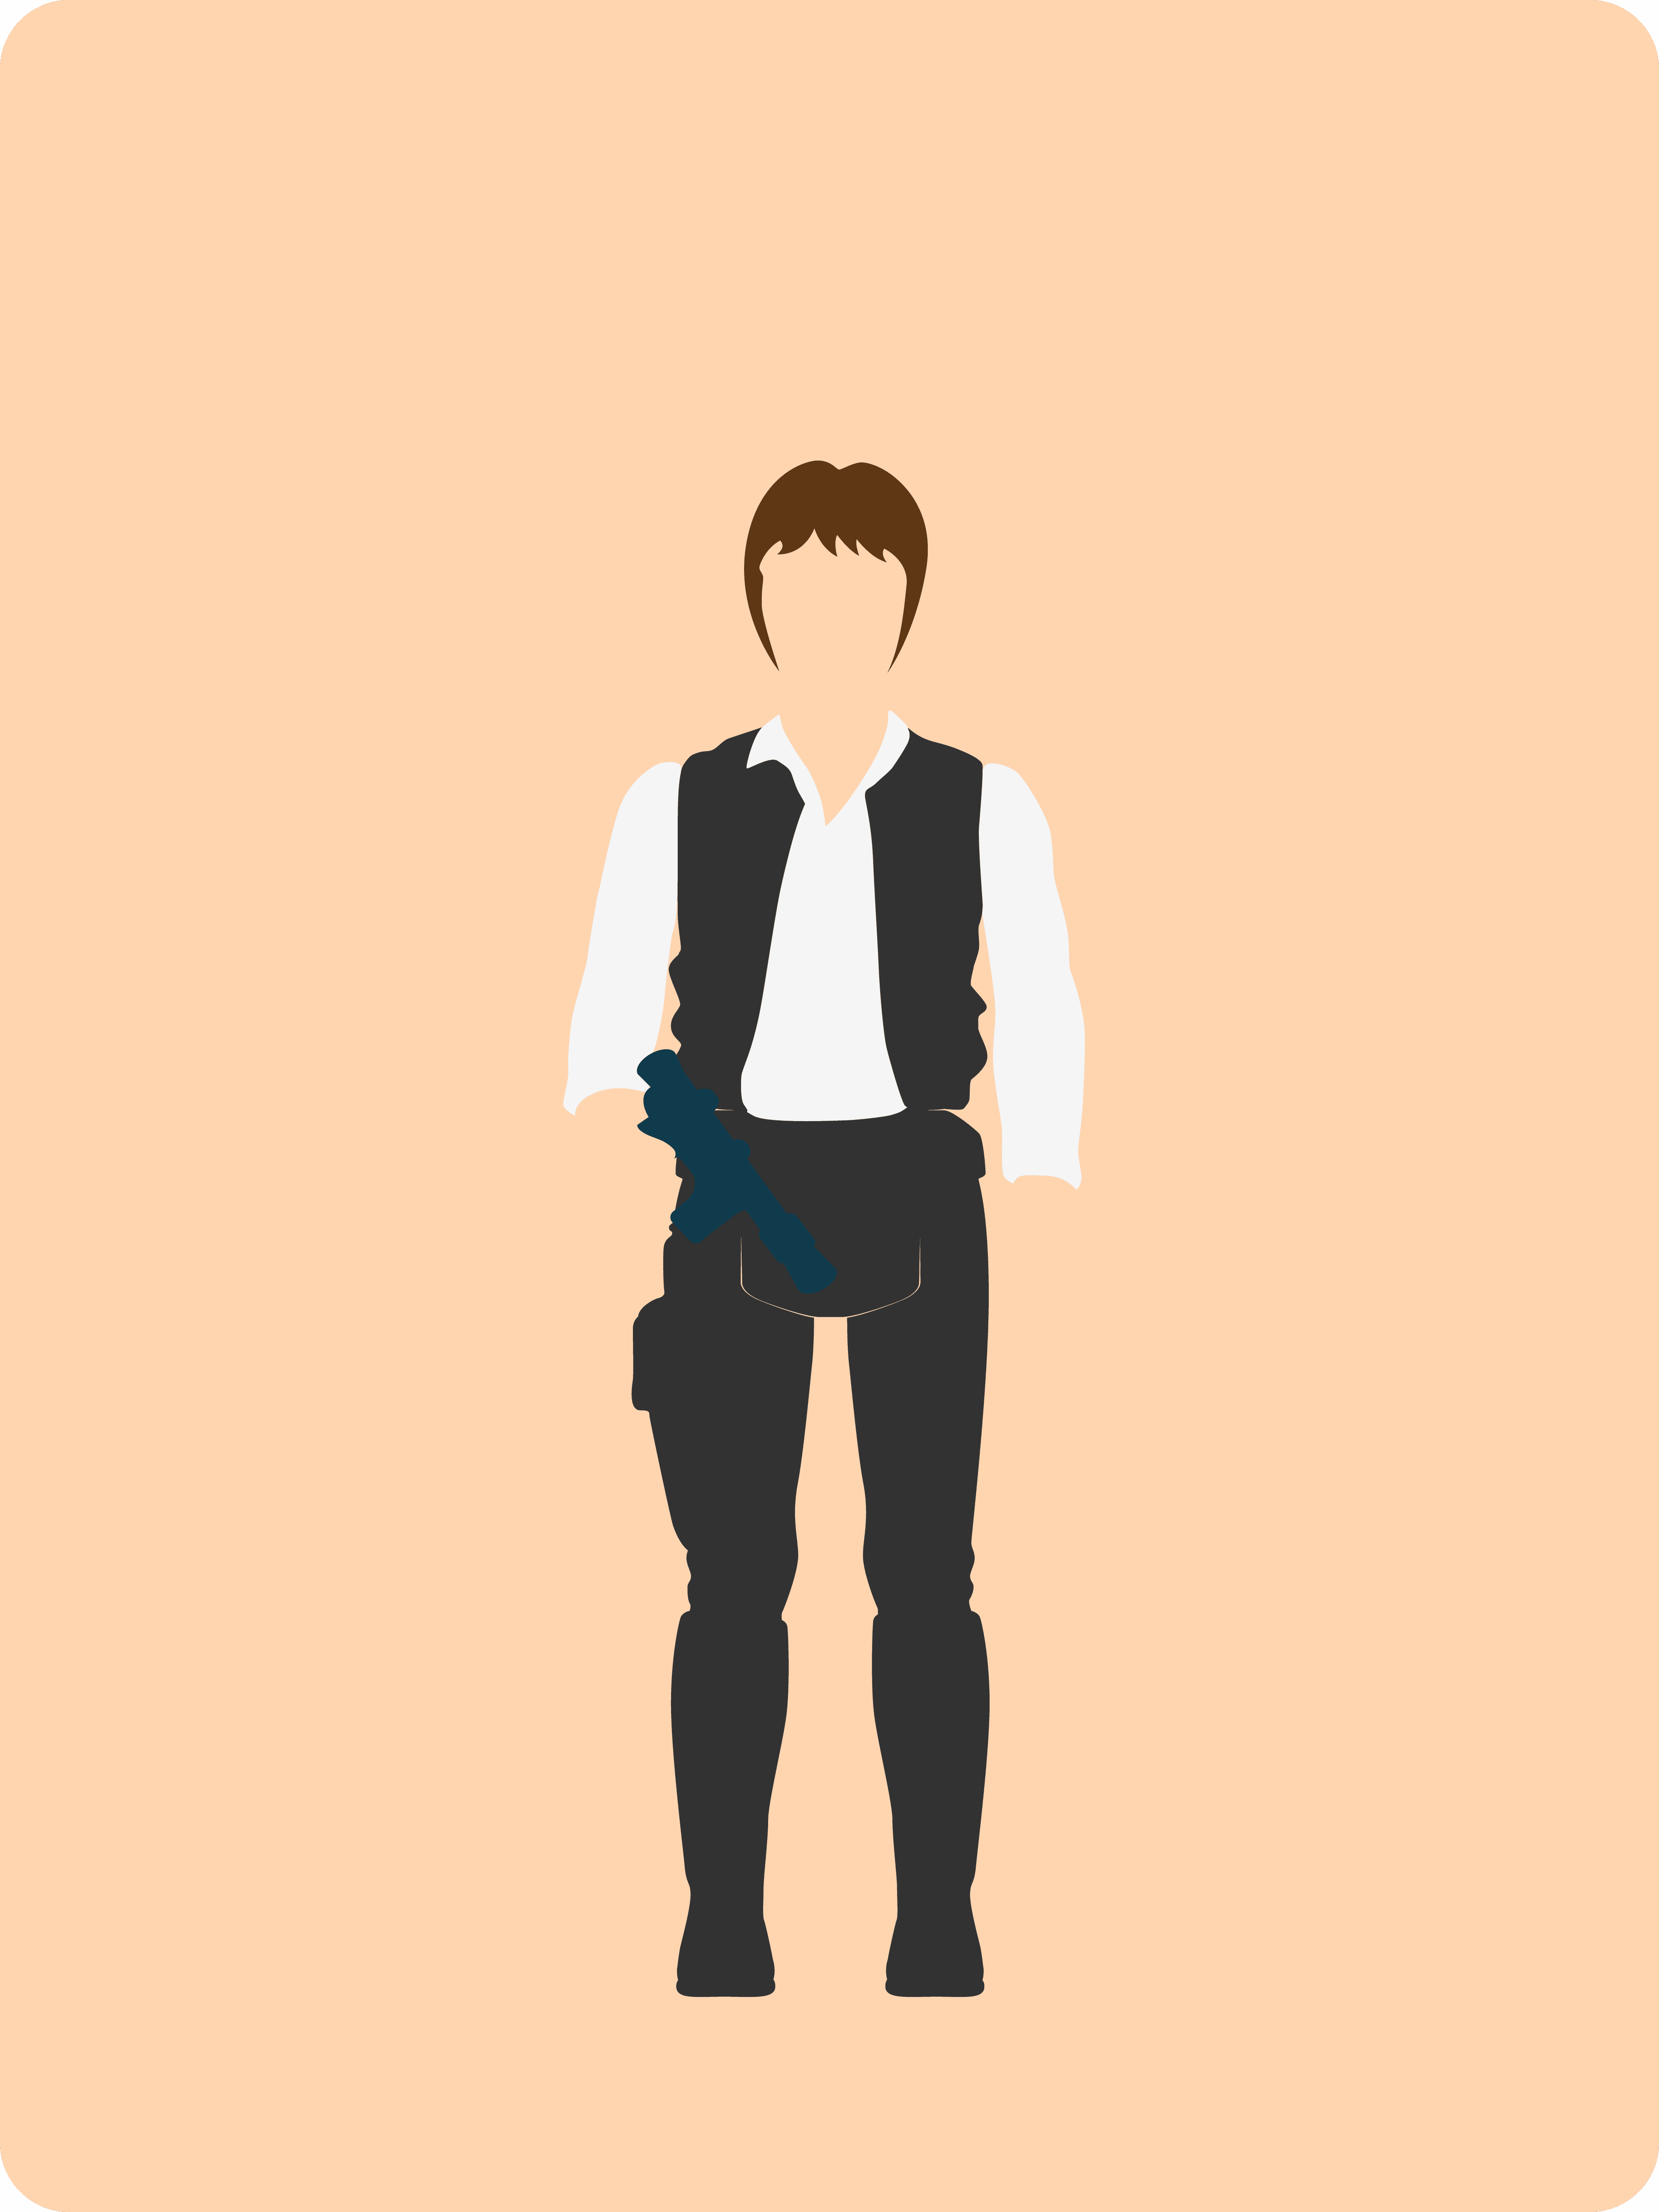 #007 Han Solo